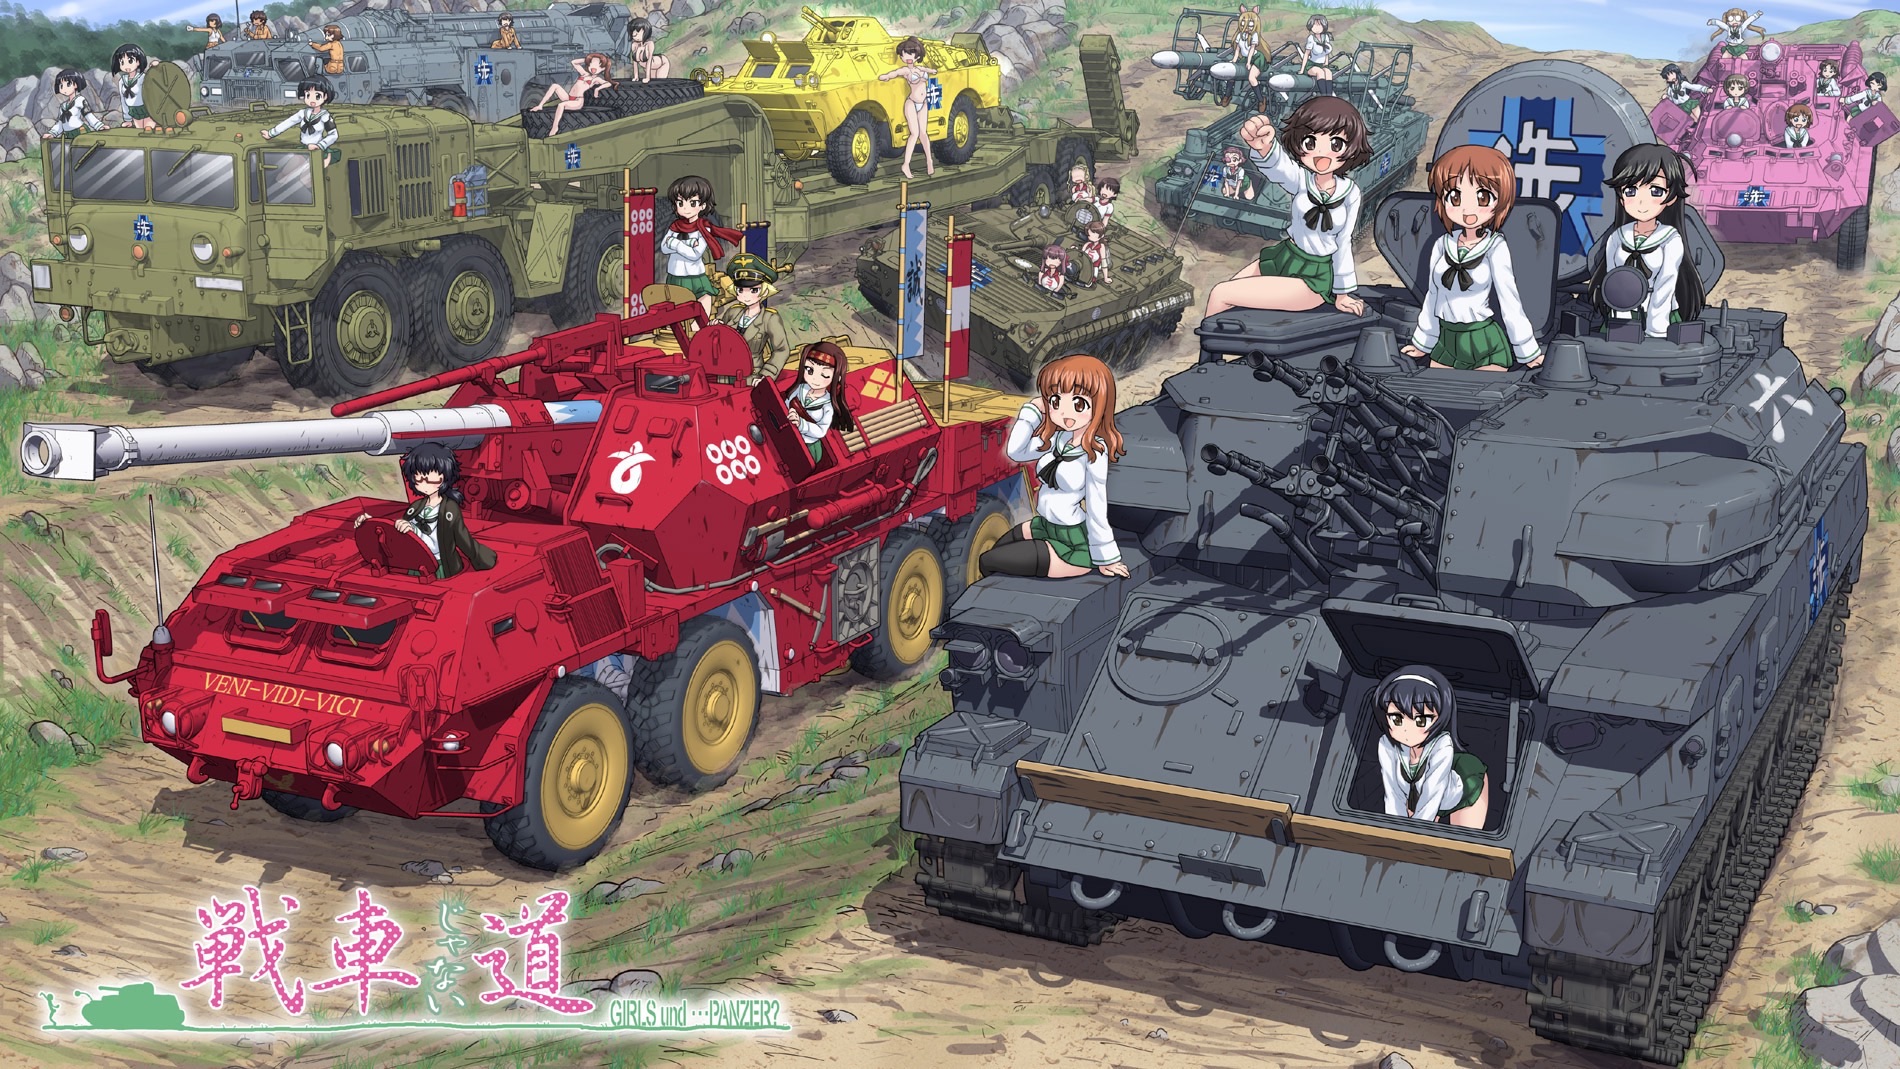 Anime Layar Lebar “Girls und Panzer” Umumkan Tanggal Tayang, Visual Baru dan Lainnya